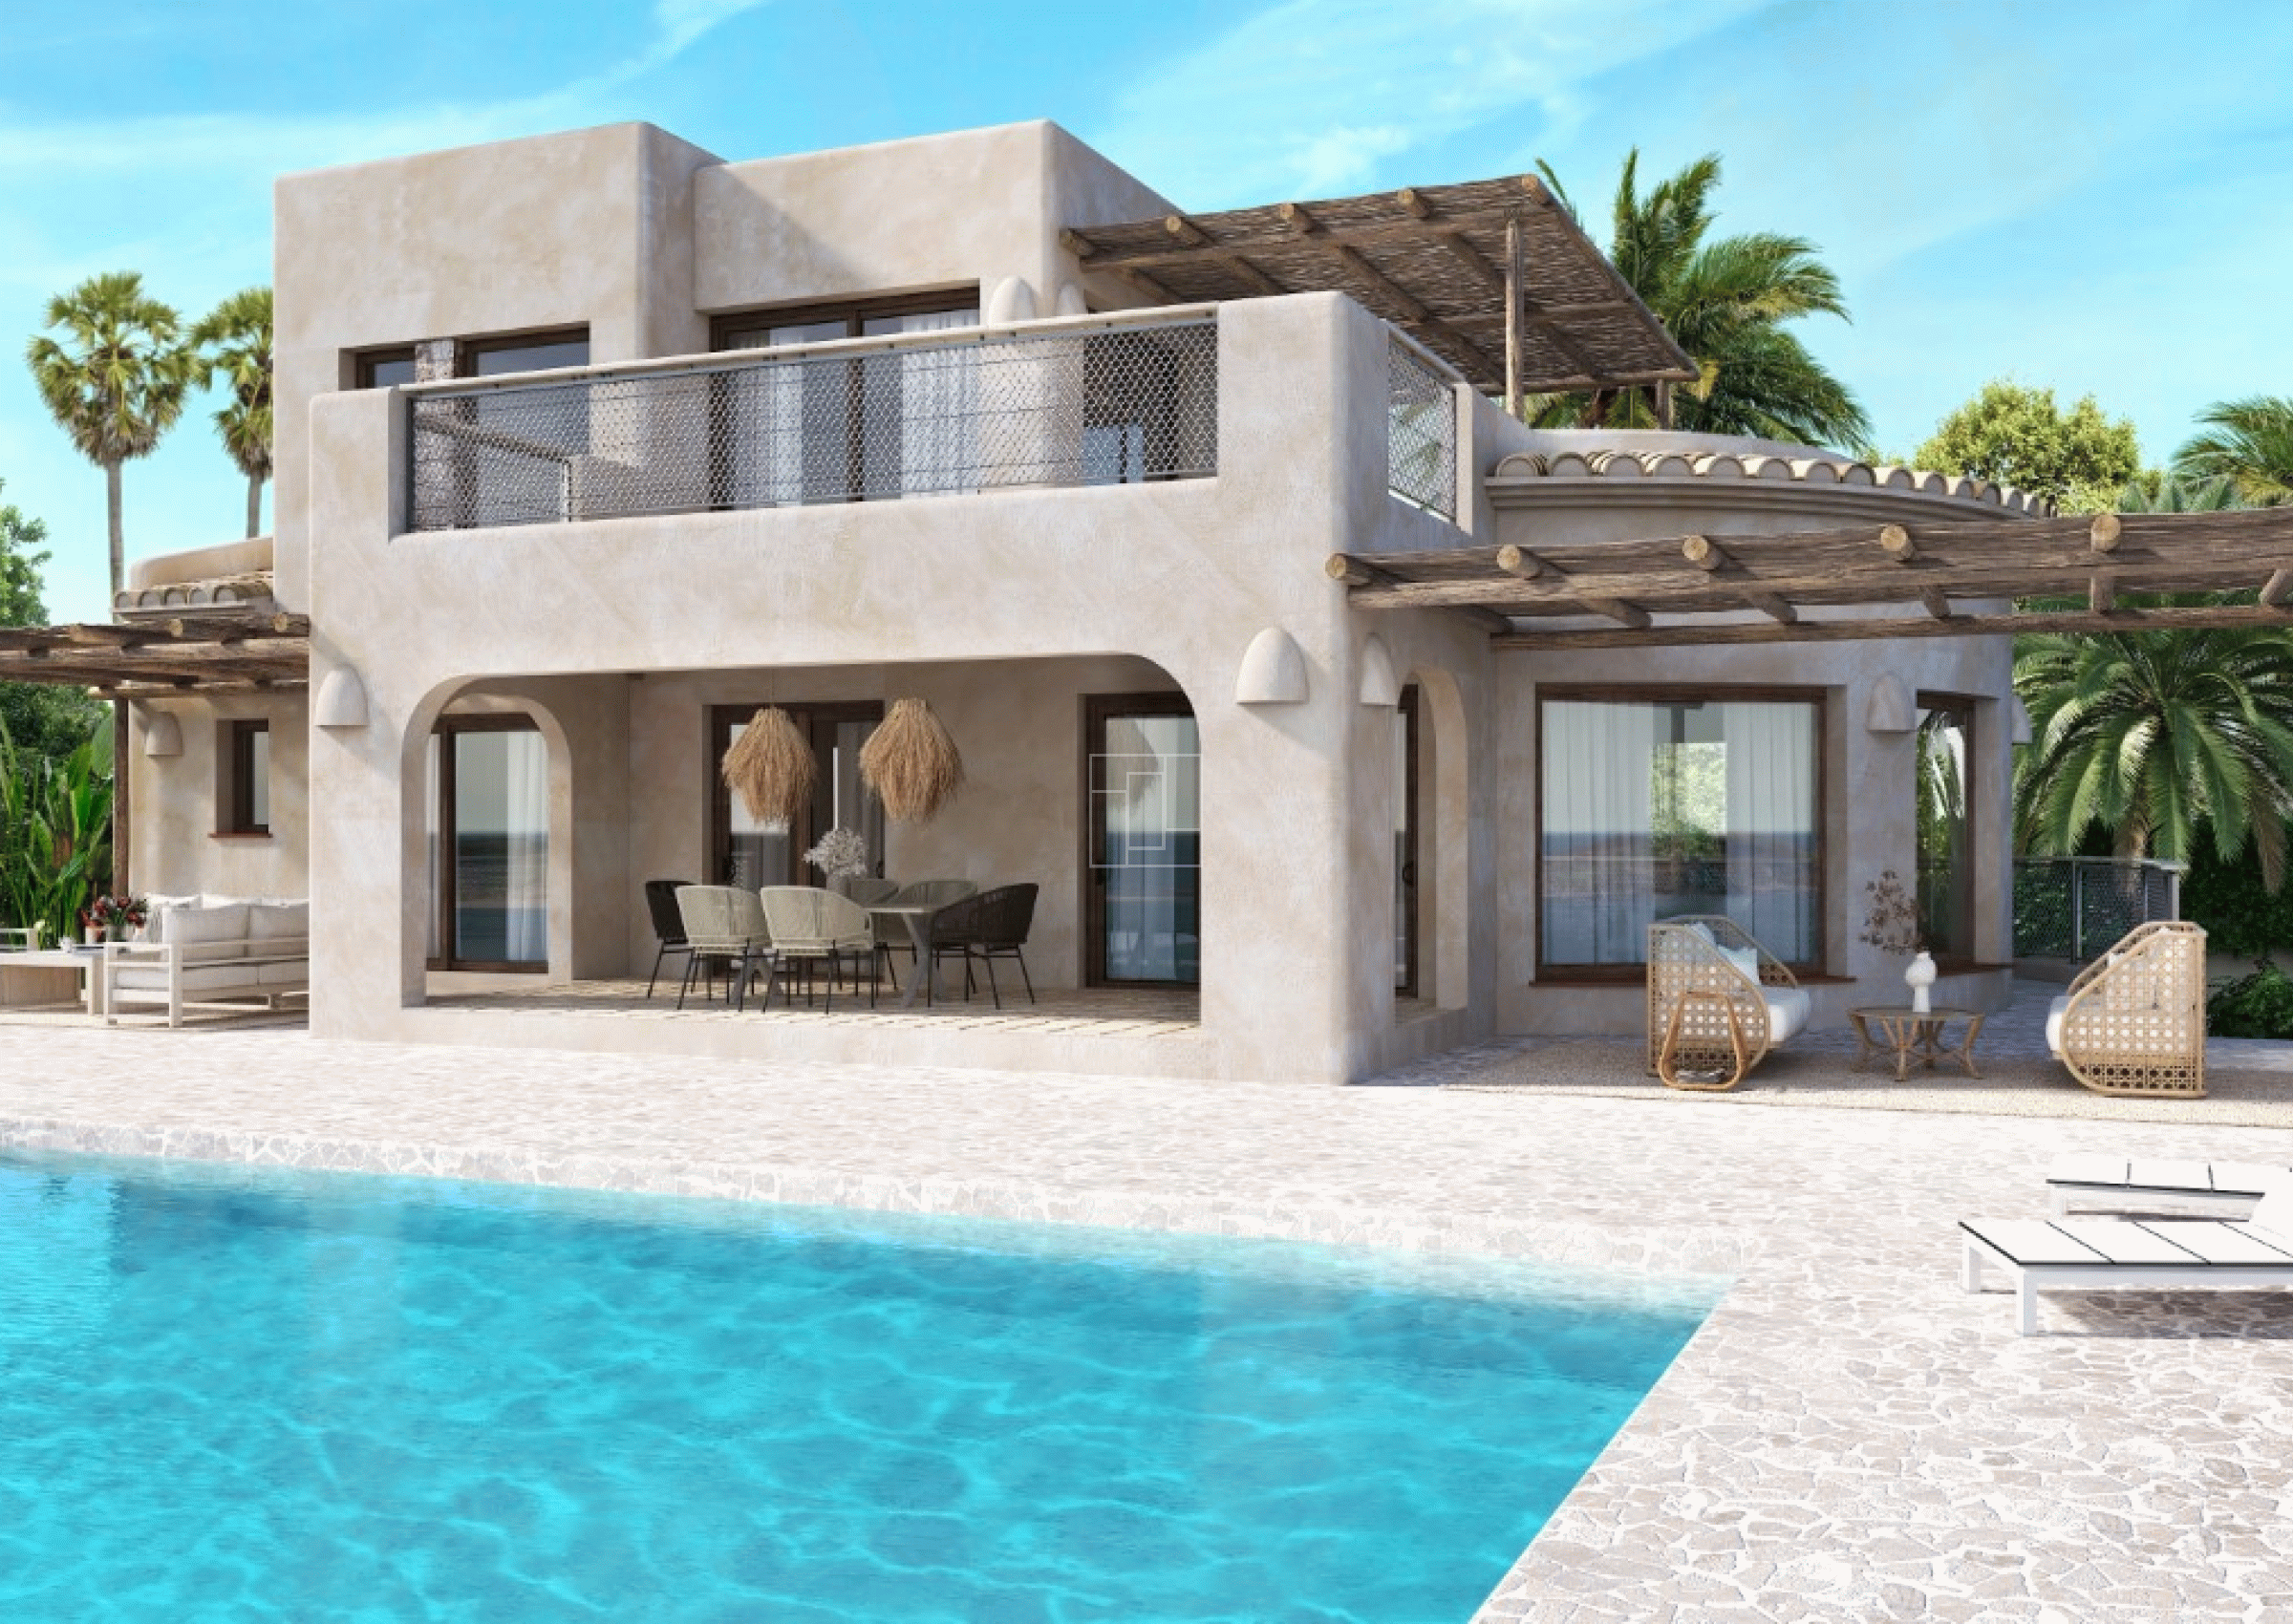 Ibiza style villa with fantastic sea views in Jávea
vp